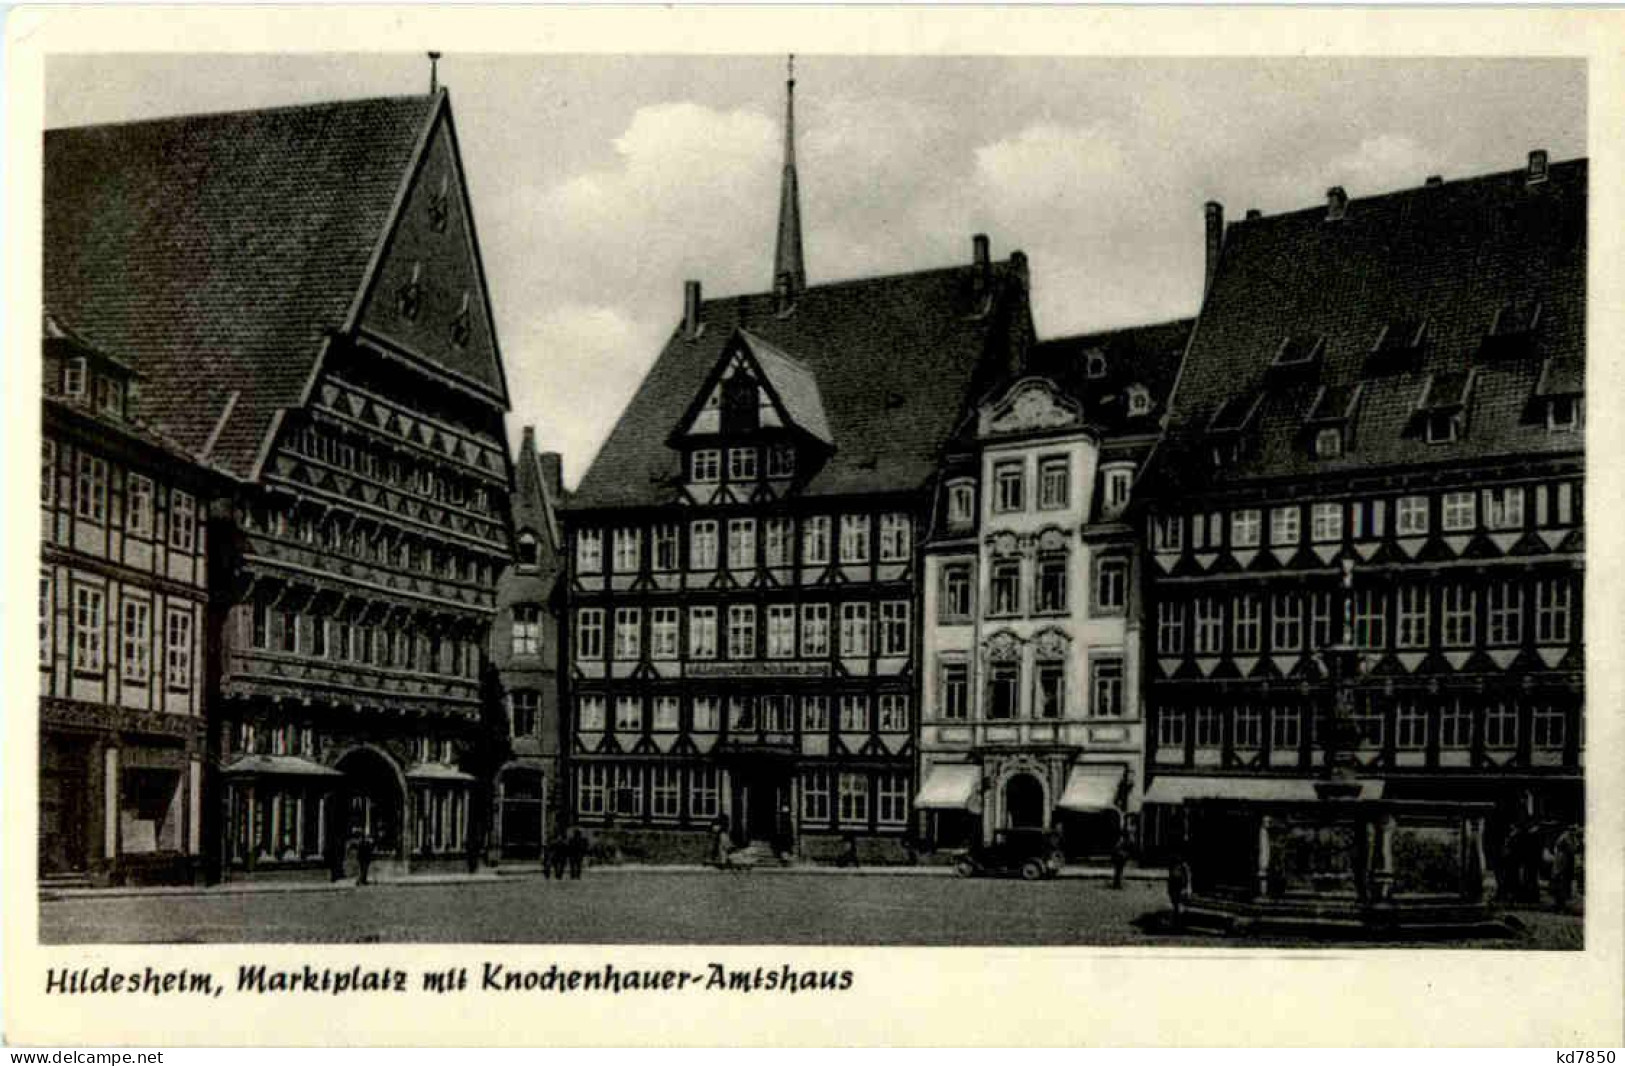 Hildesheim - Marktplatz - Hildesheim